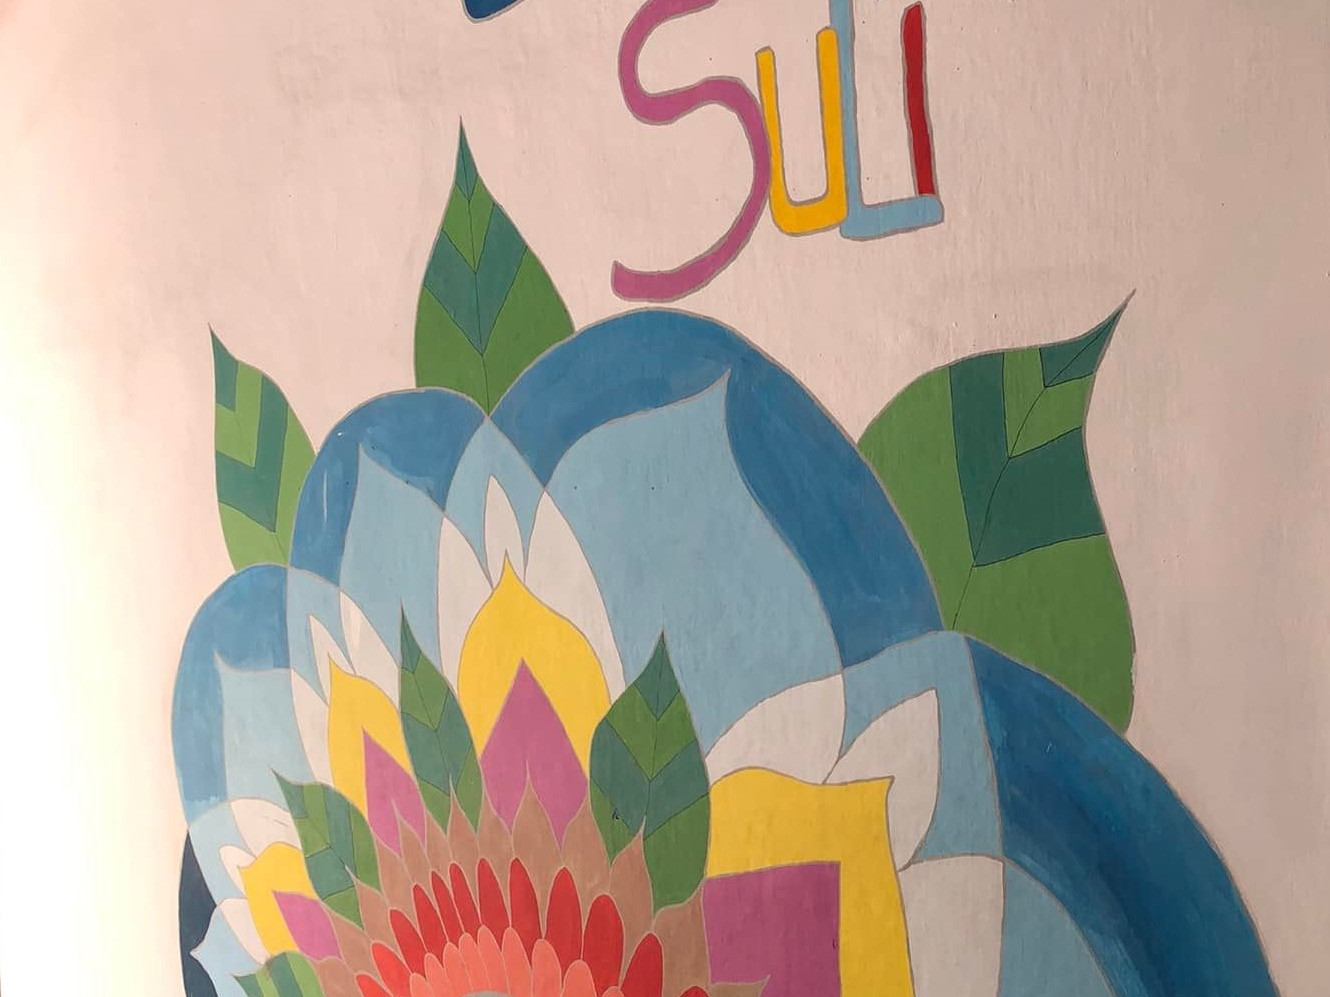 Etyek fideszes polgármestere átfestetne egy színes mandalát a helyi iskola falán, mert szerinte az szivárványos propaganda